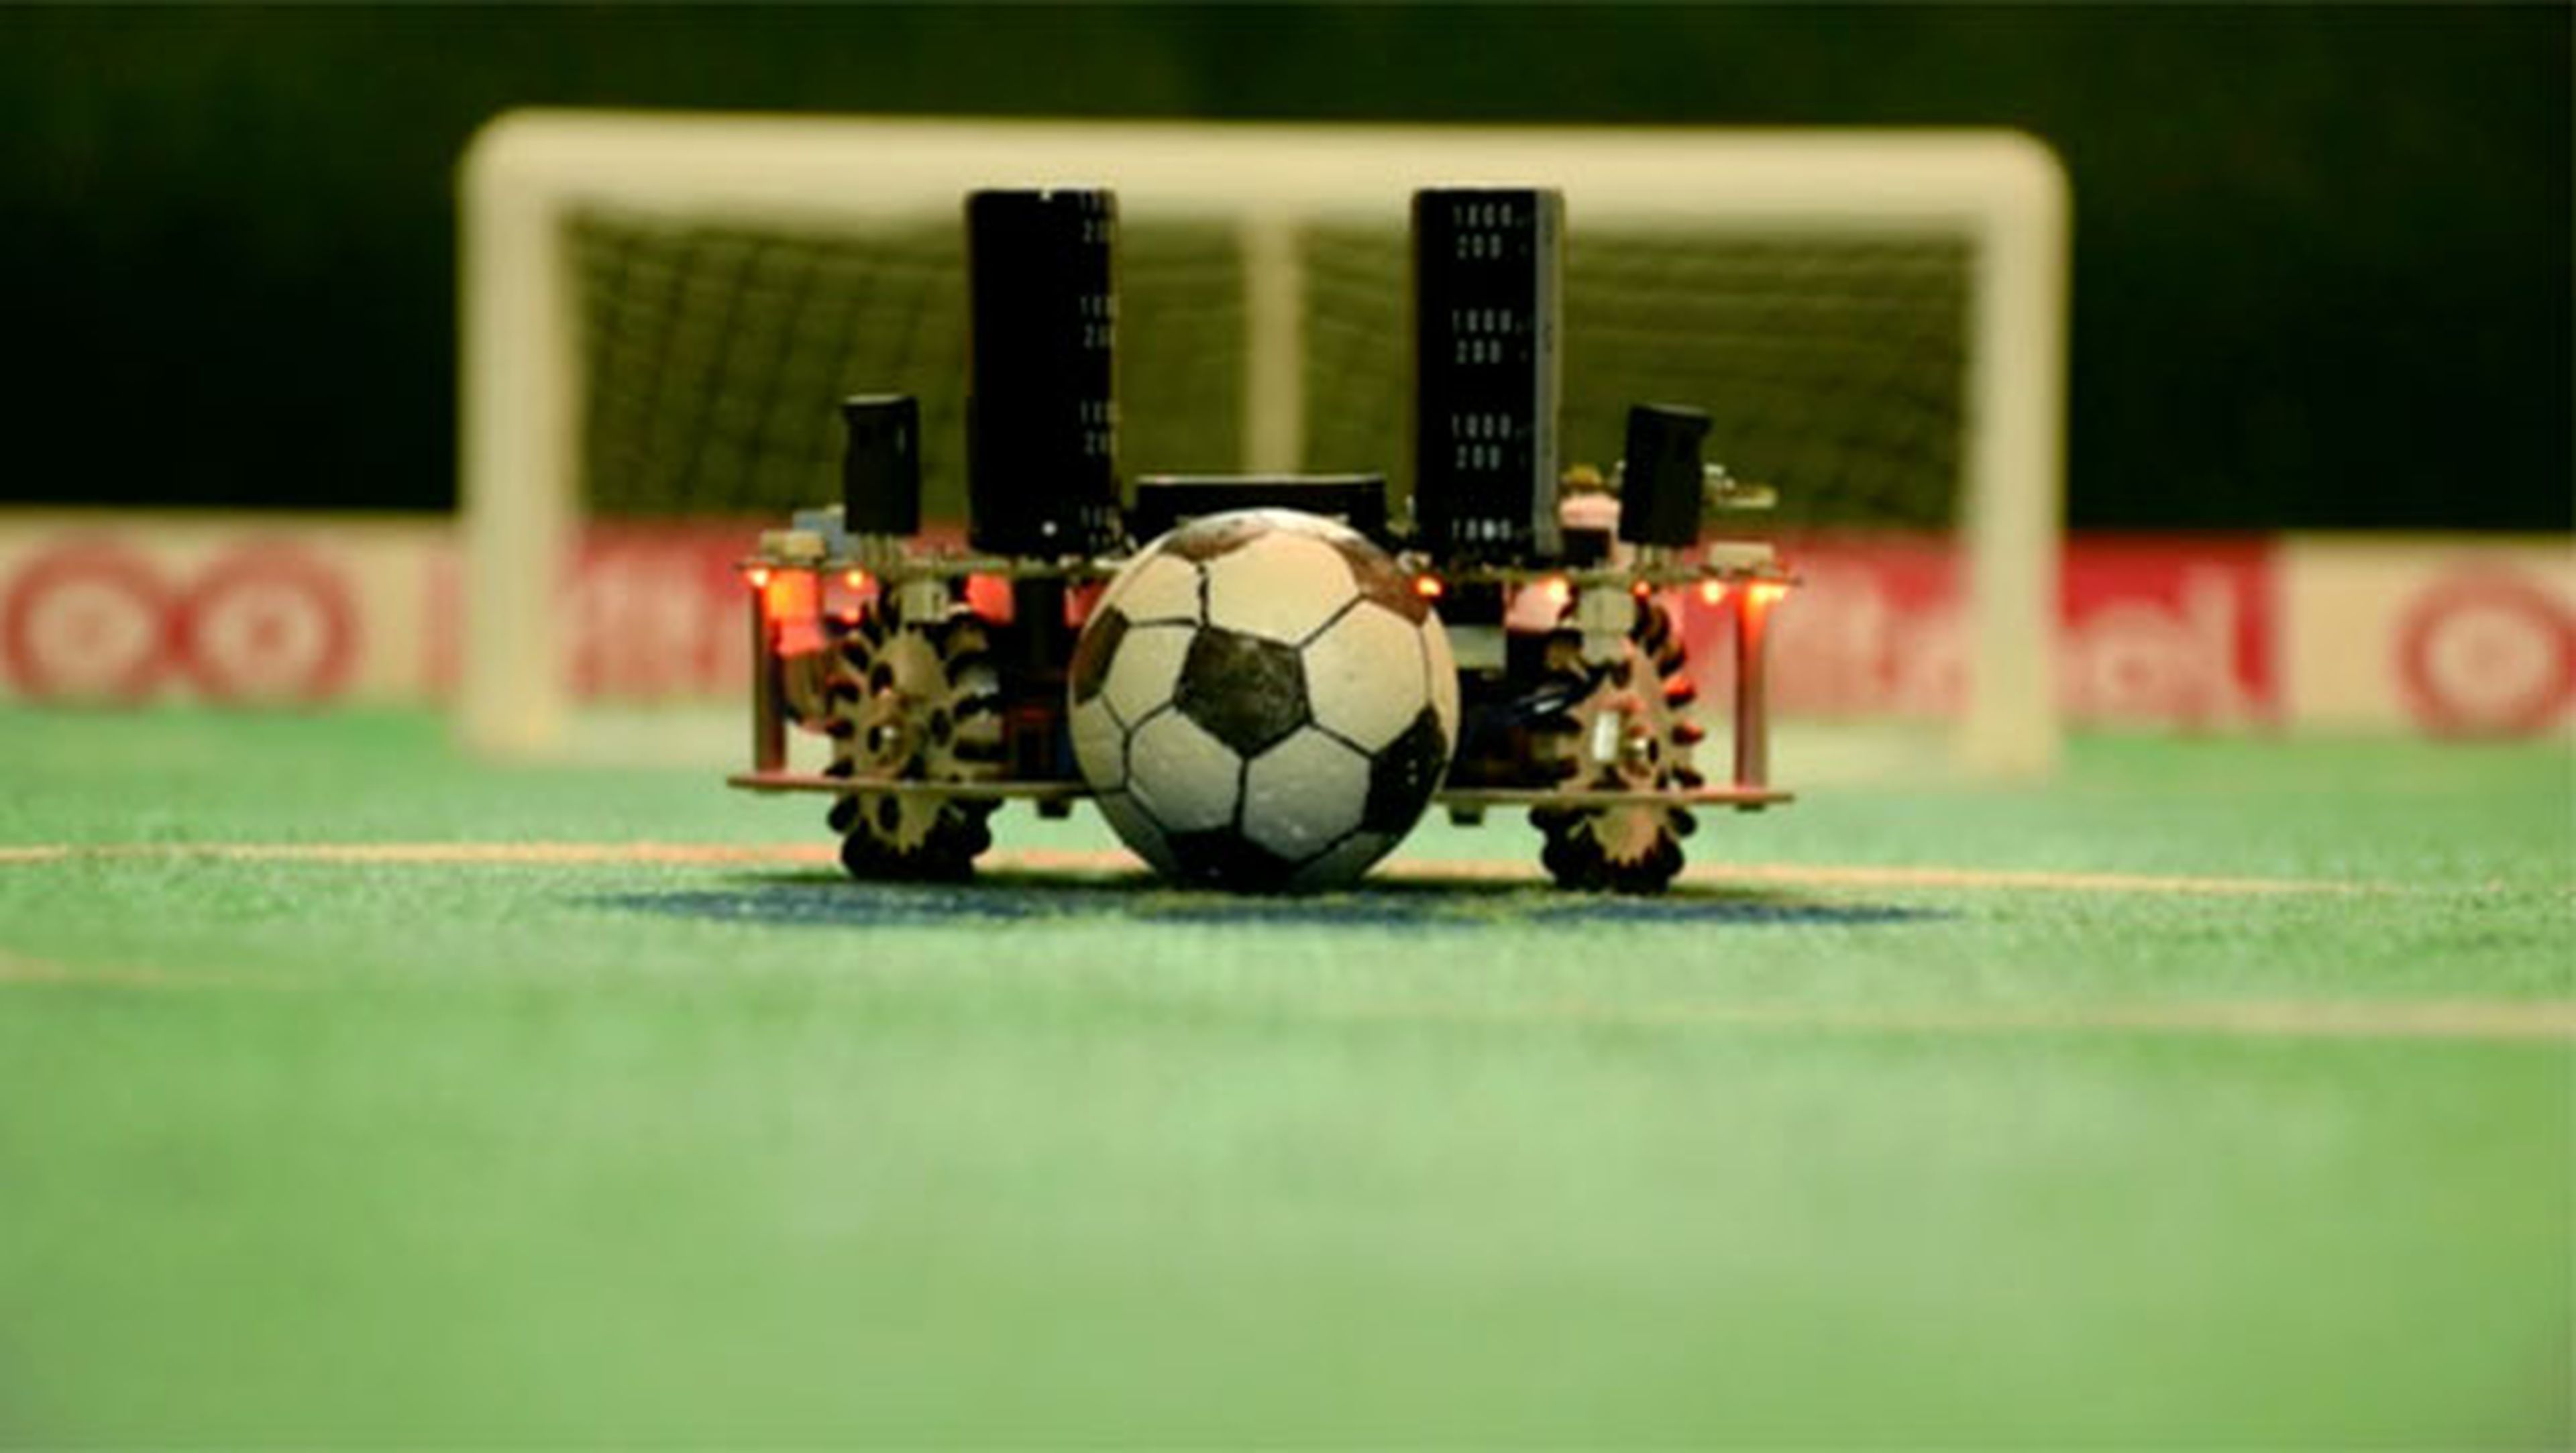 WiSoccero, el robot que juega al fútbol por control remoto